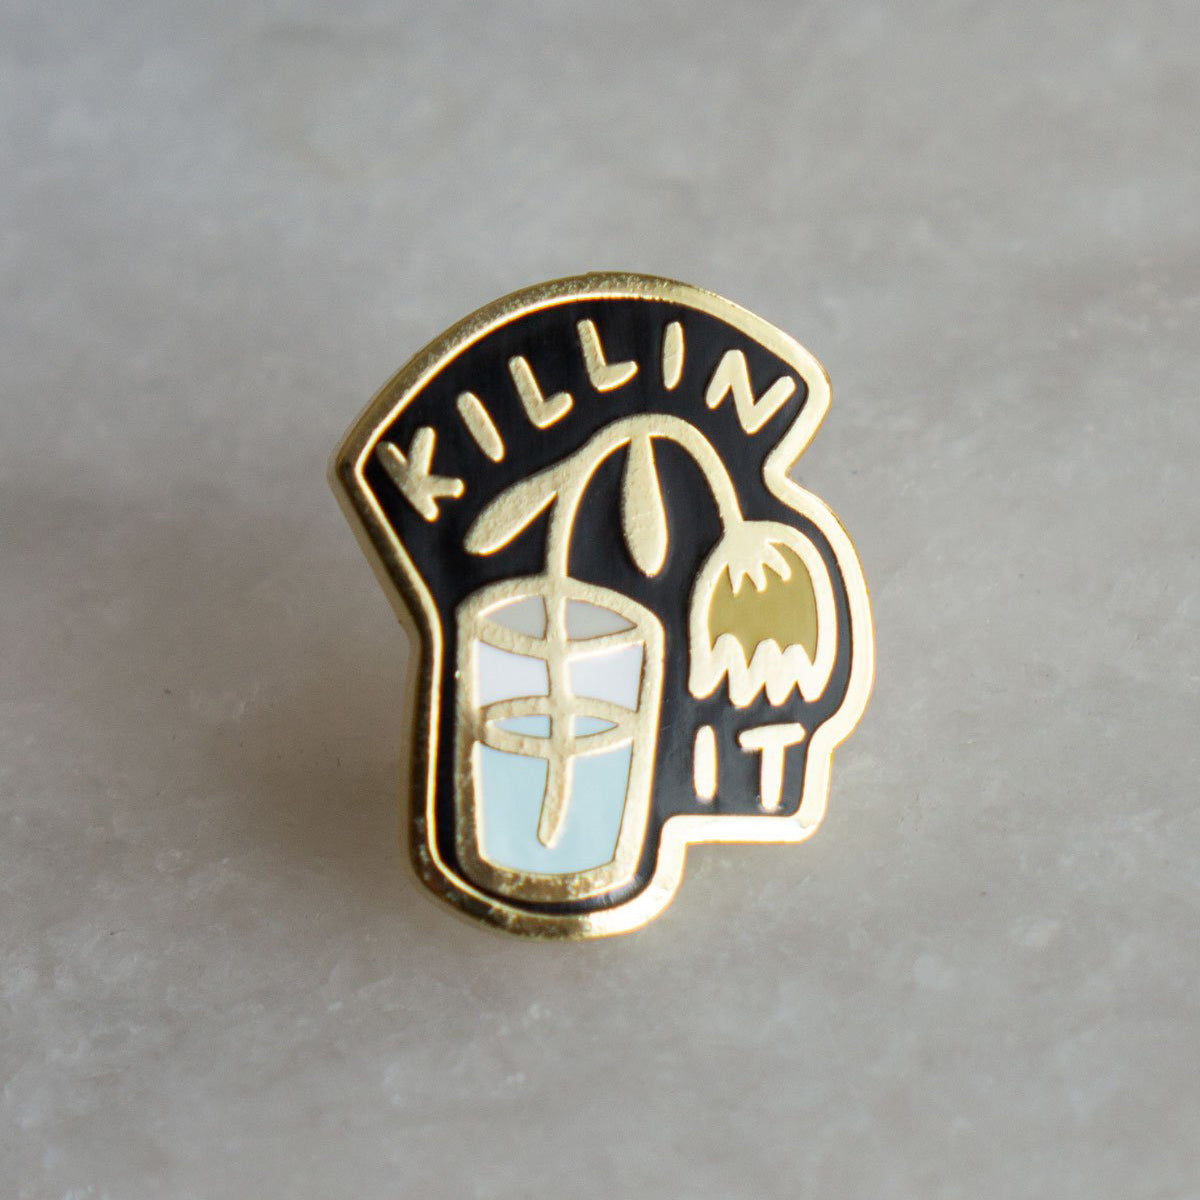 Killin' It Pin